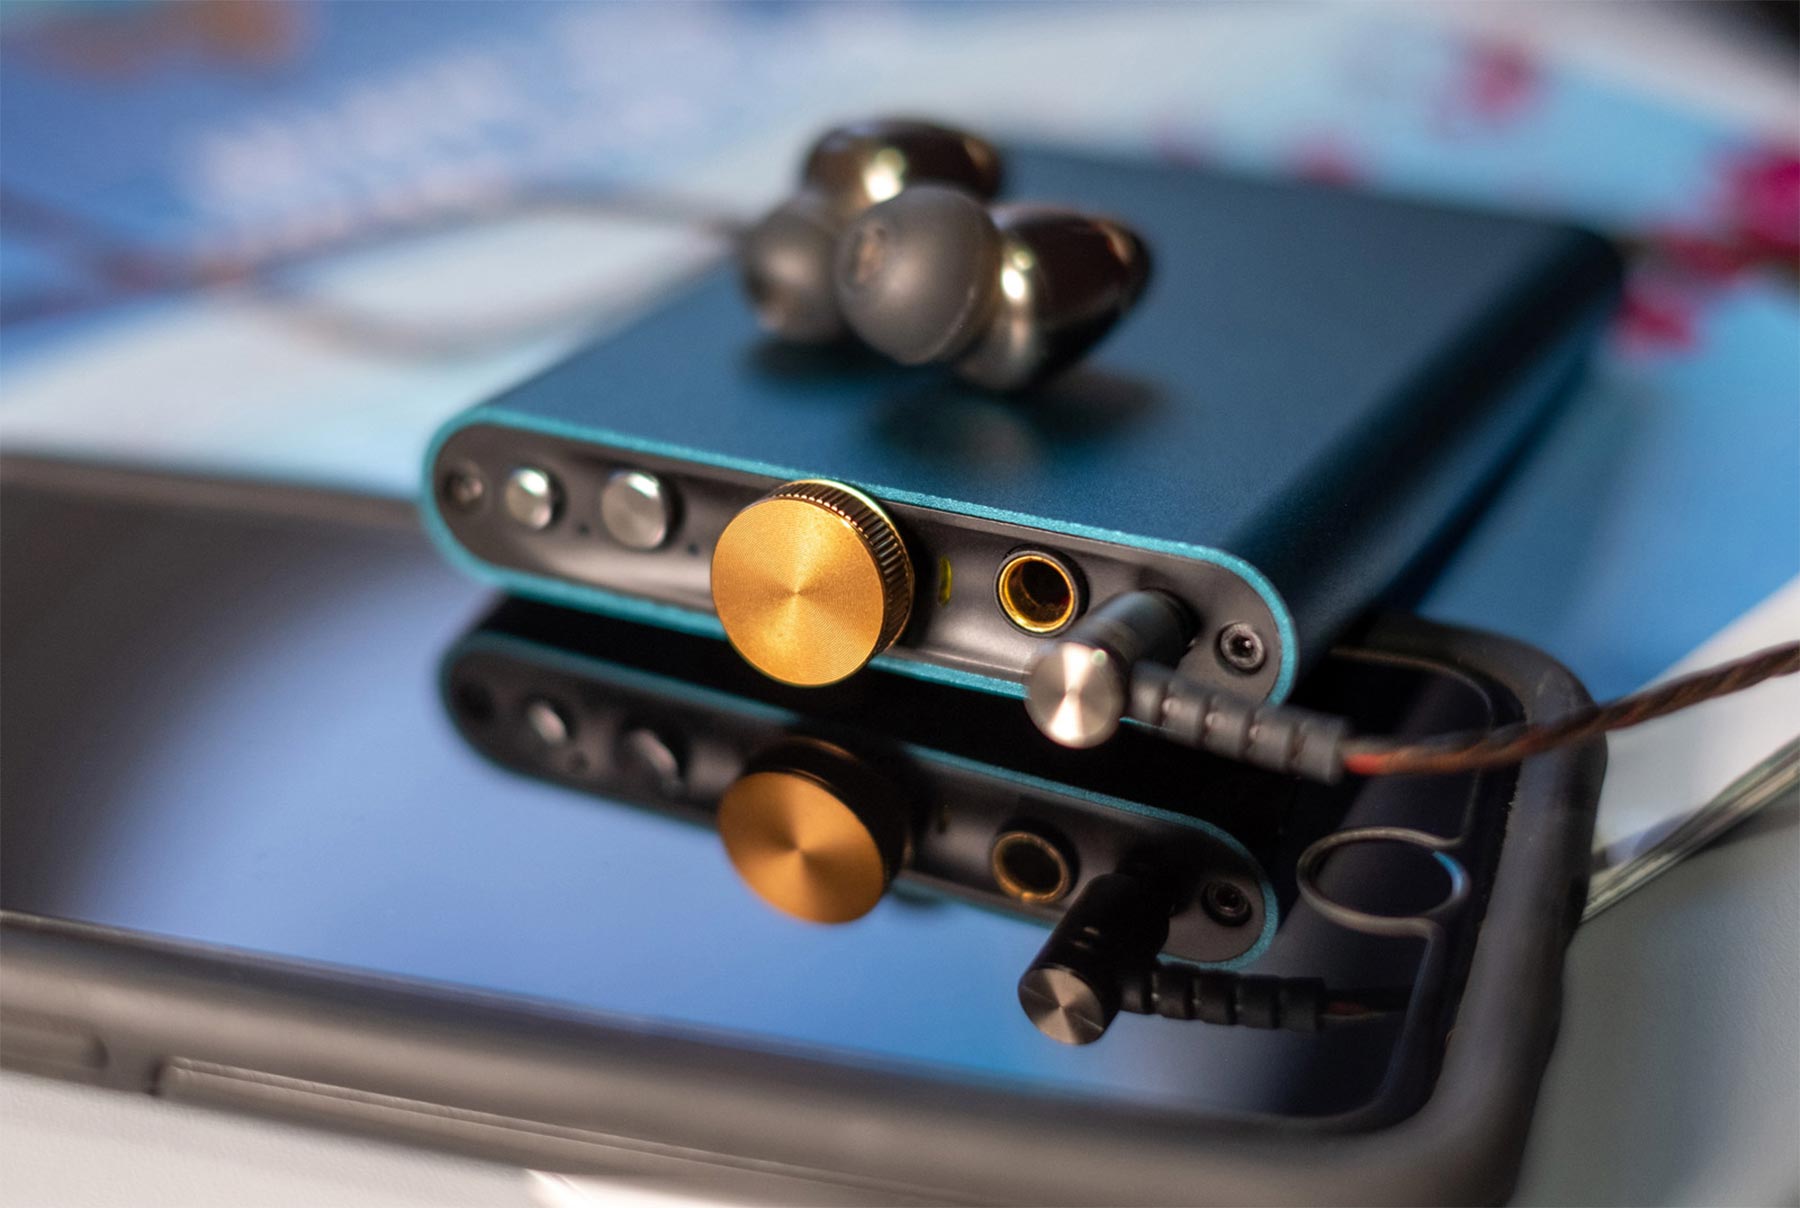 オーディオ機器iFi-Audio ポータブル ヘッドフォン アンプ hip-dac ブルー